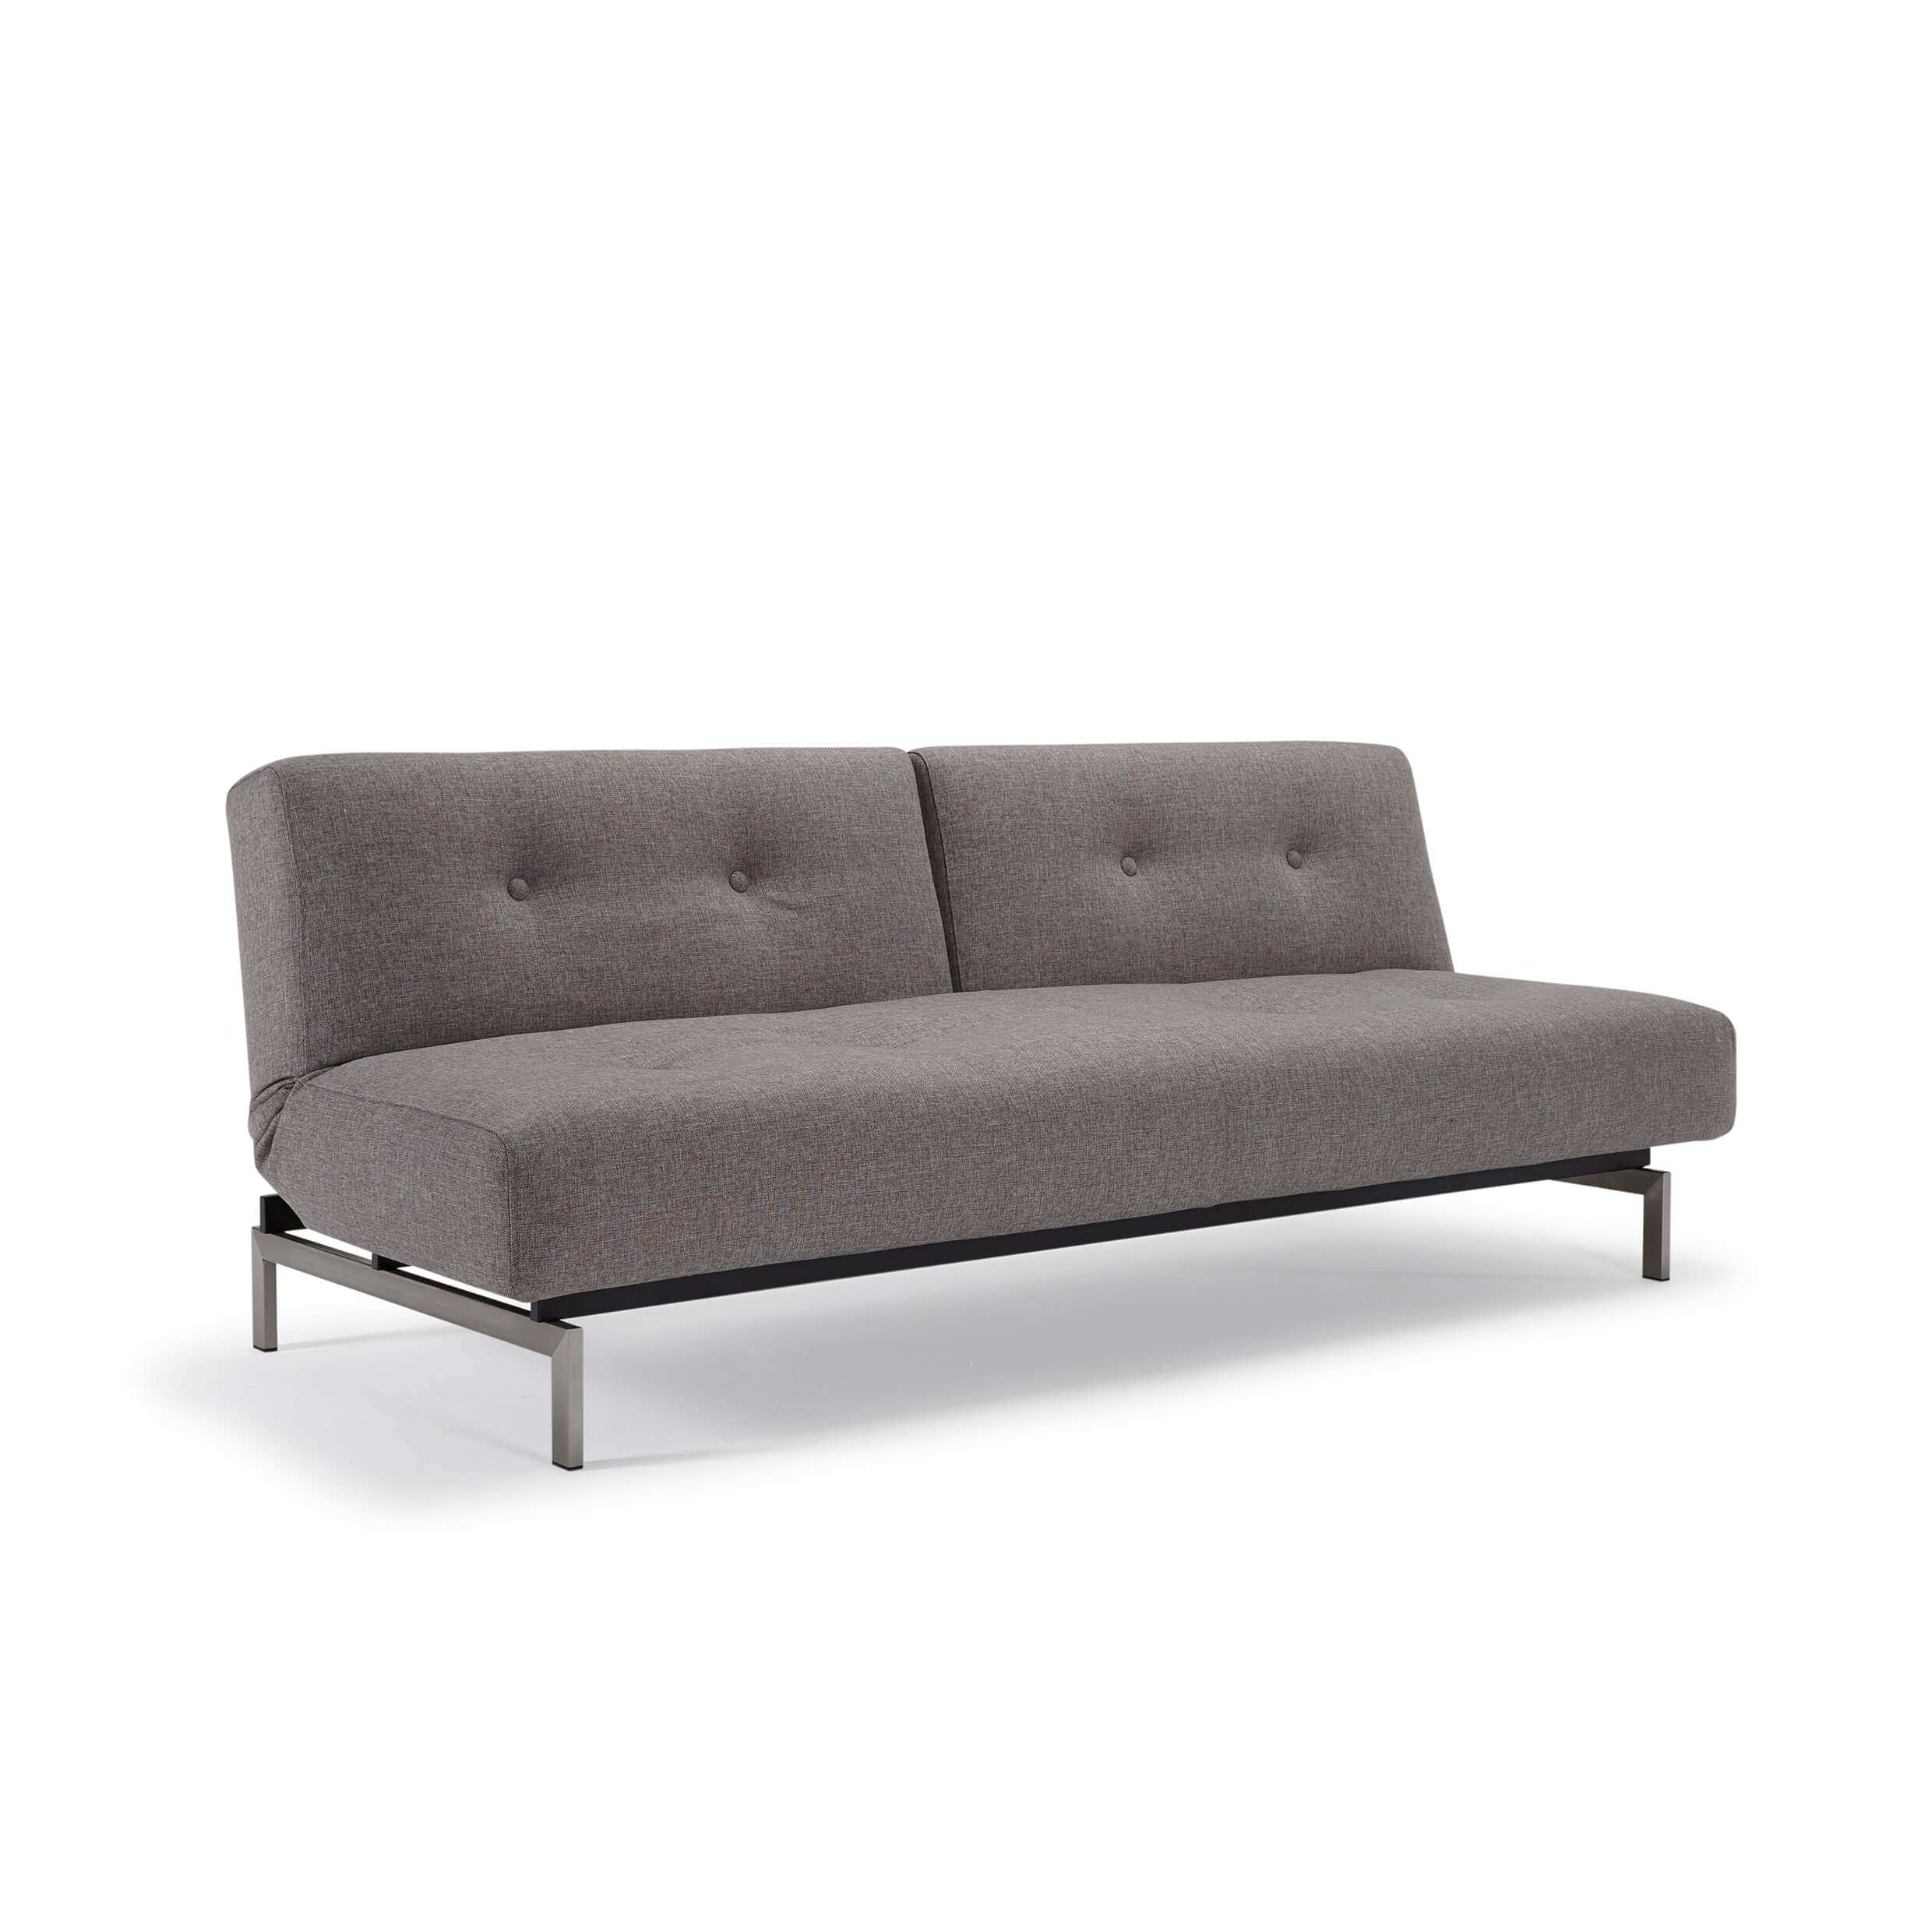 Convertable sofa bed convertible futon sofa bed